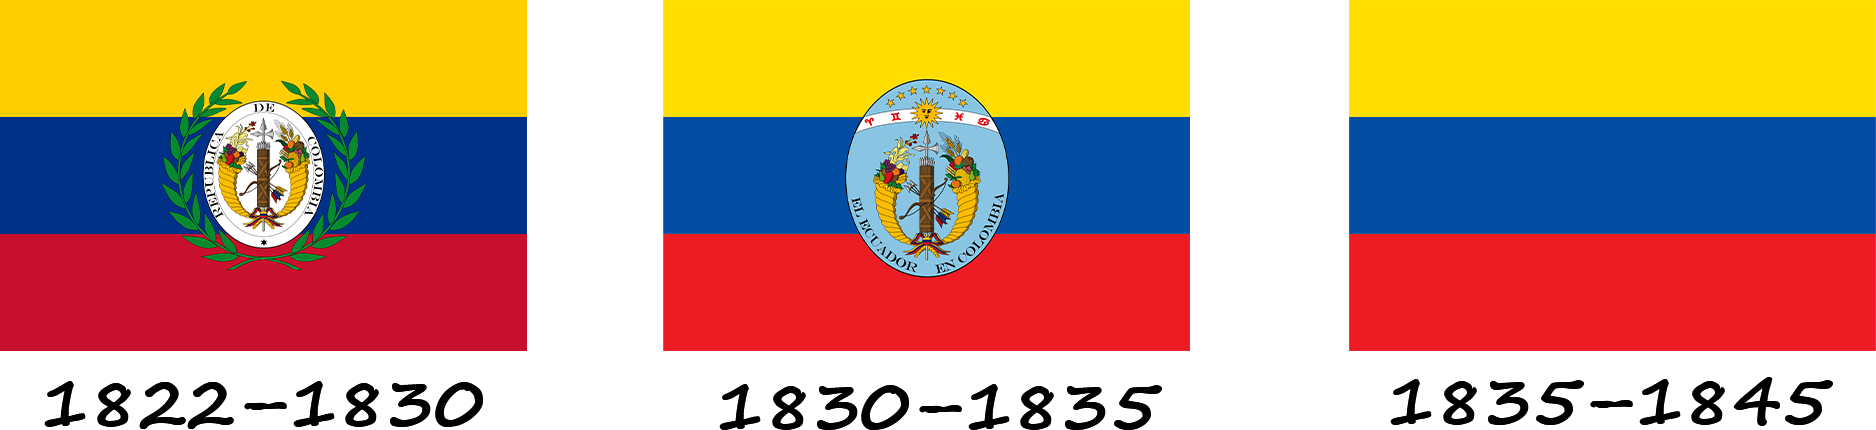 Історія прапору Еквадору